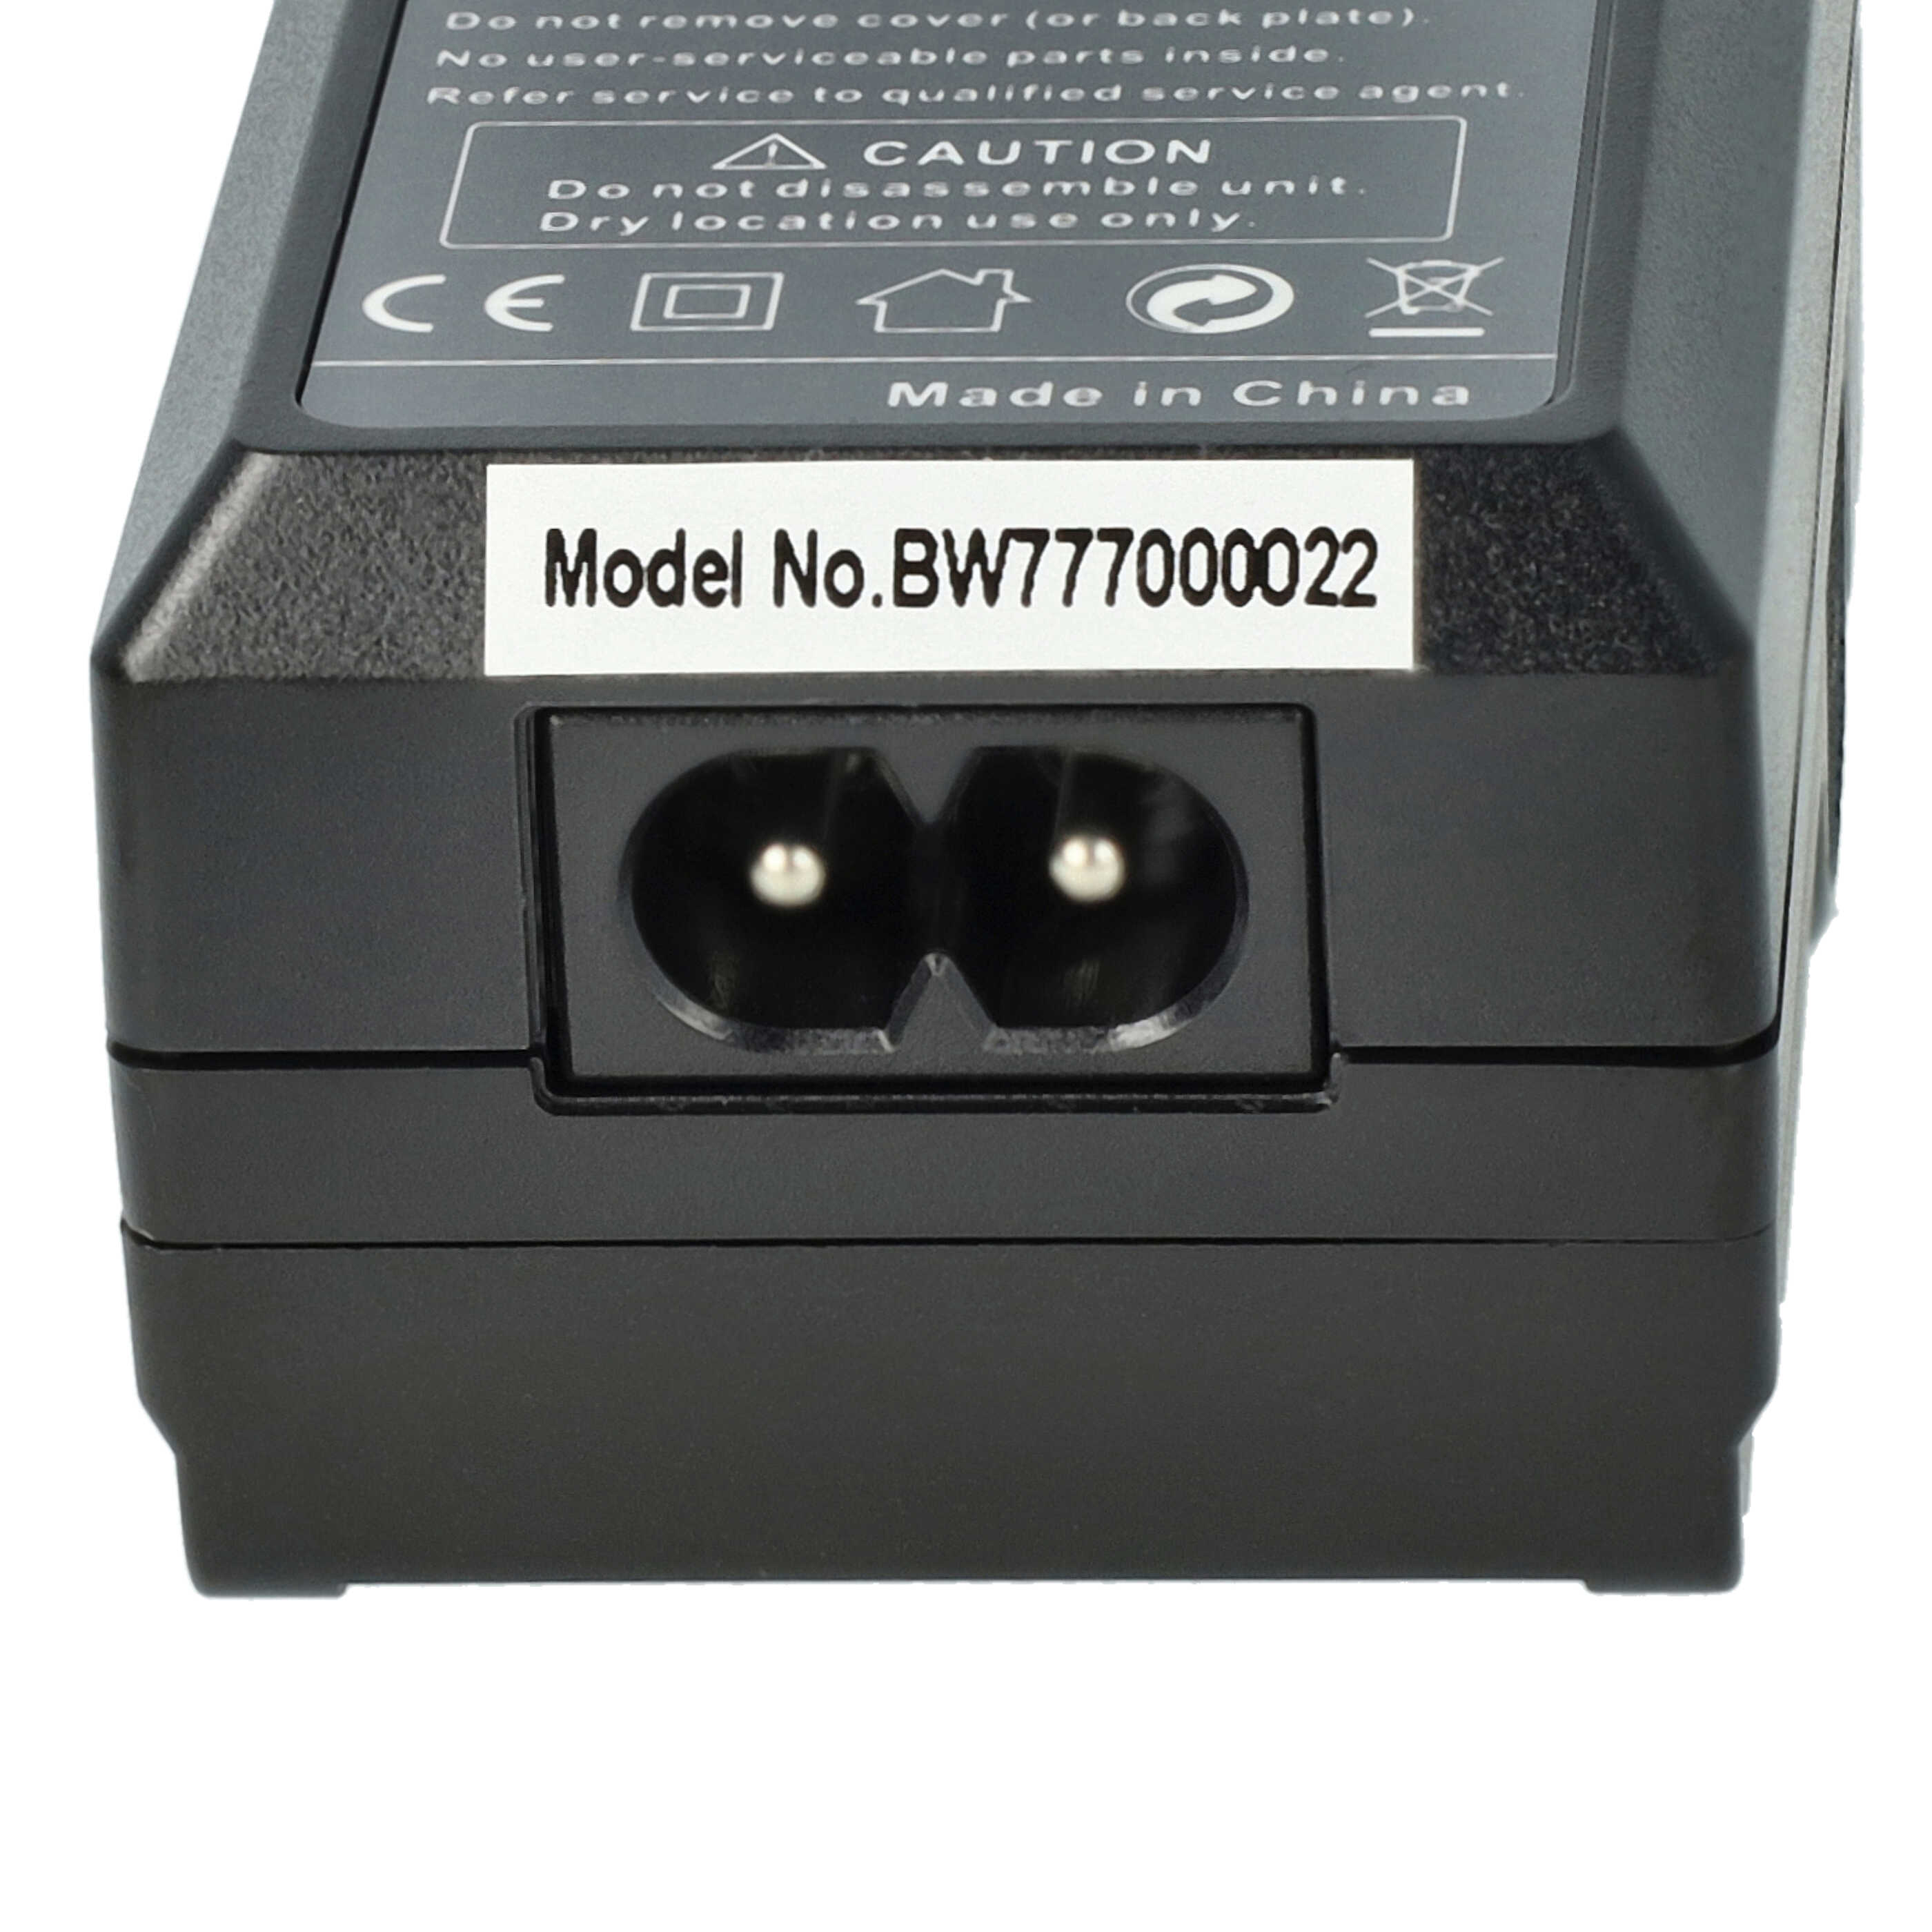 Ładowarka do aparatu Olympus PSBLS1 i innych - ładowarka akumulatora 0,6 A, 8,4 V